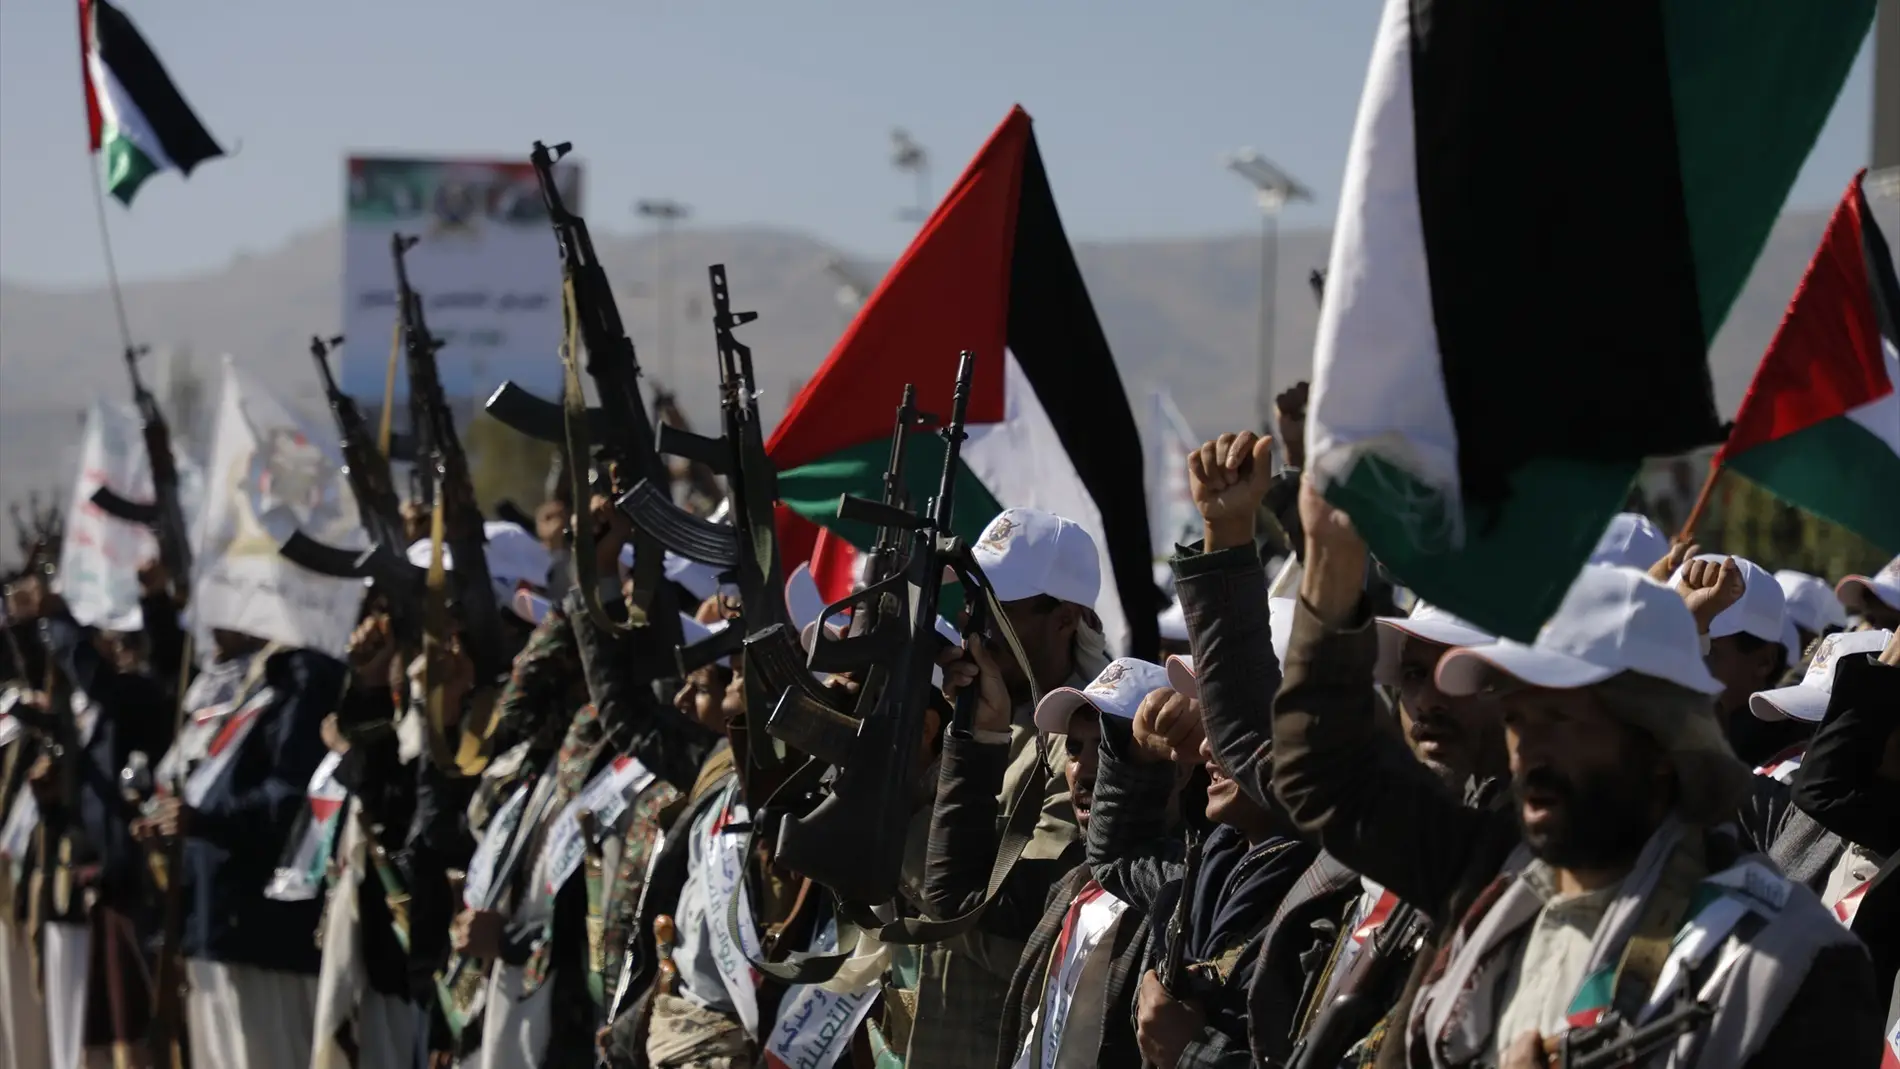 Militares en Yemen destinados a luchar en apoyo de los palestinos en Gaza